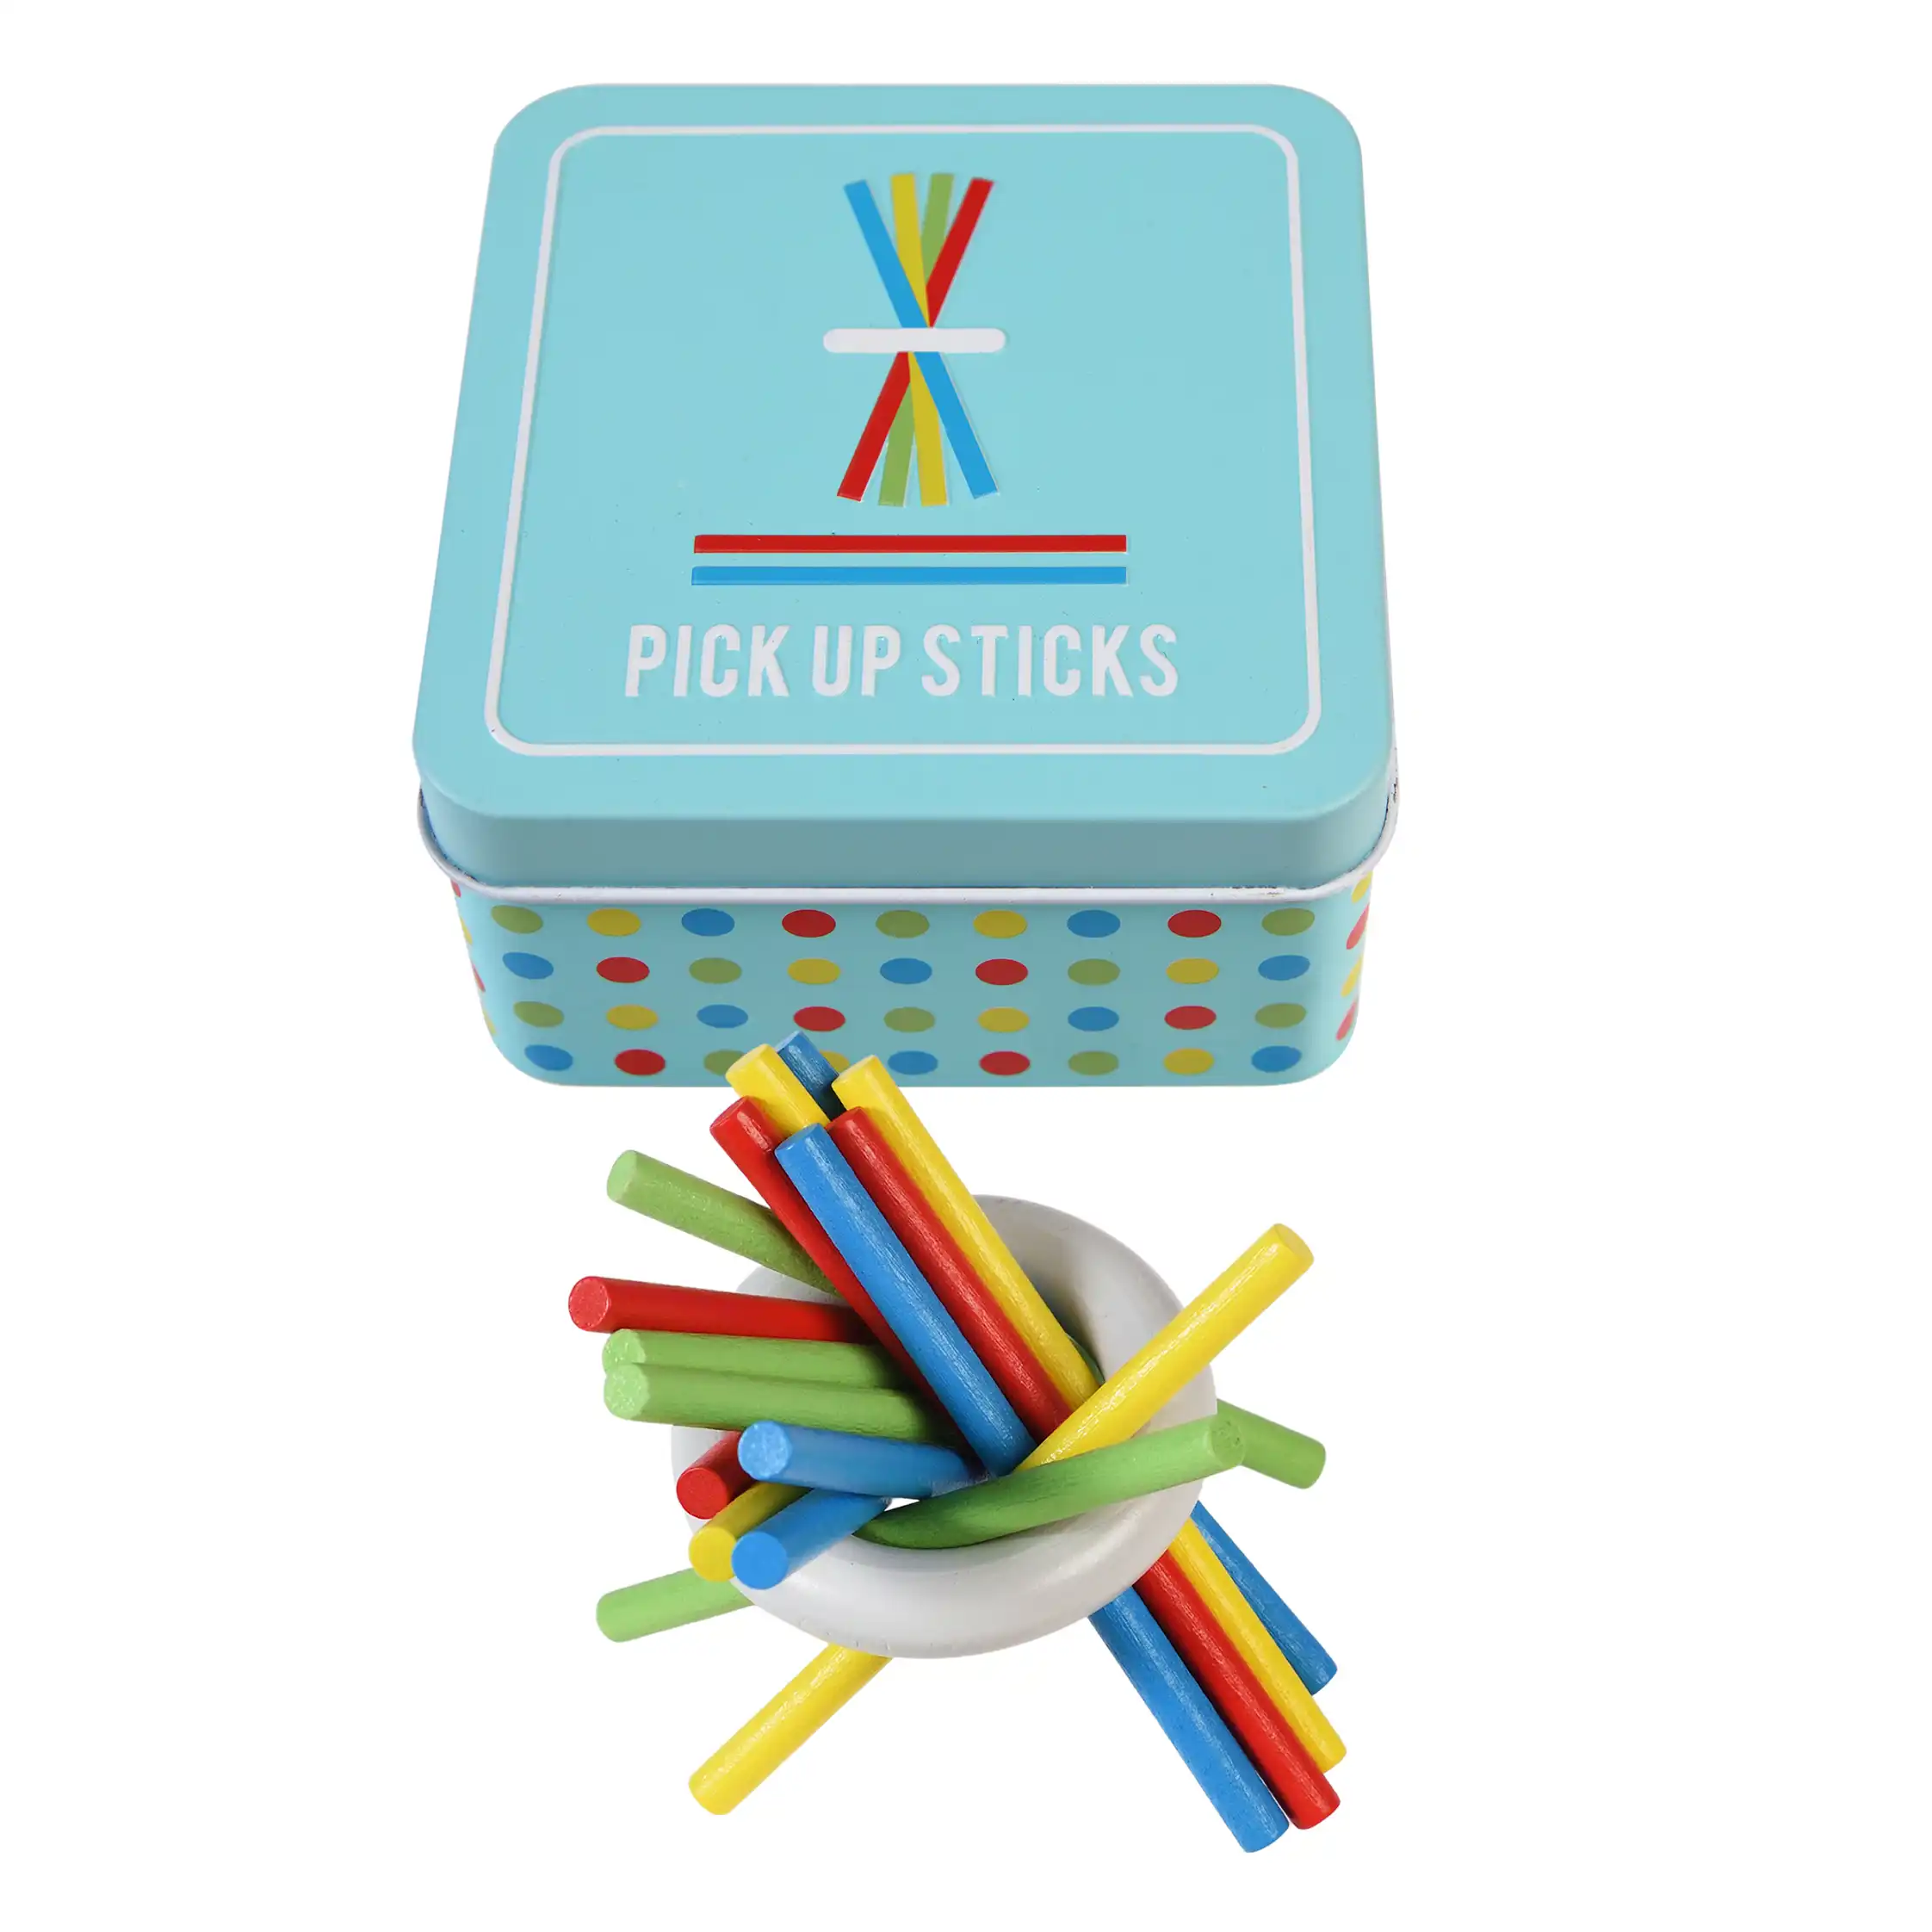 juguete de madera 'pick up sticks' en una lata